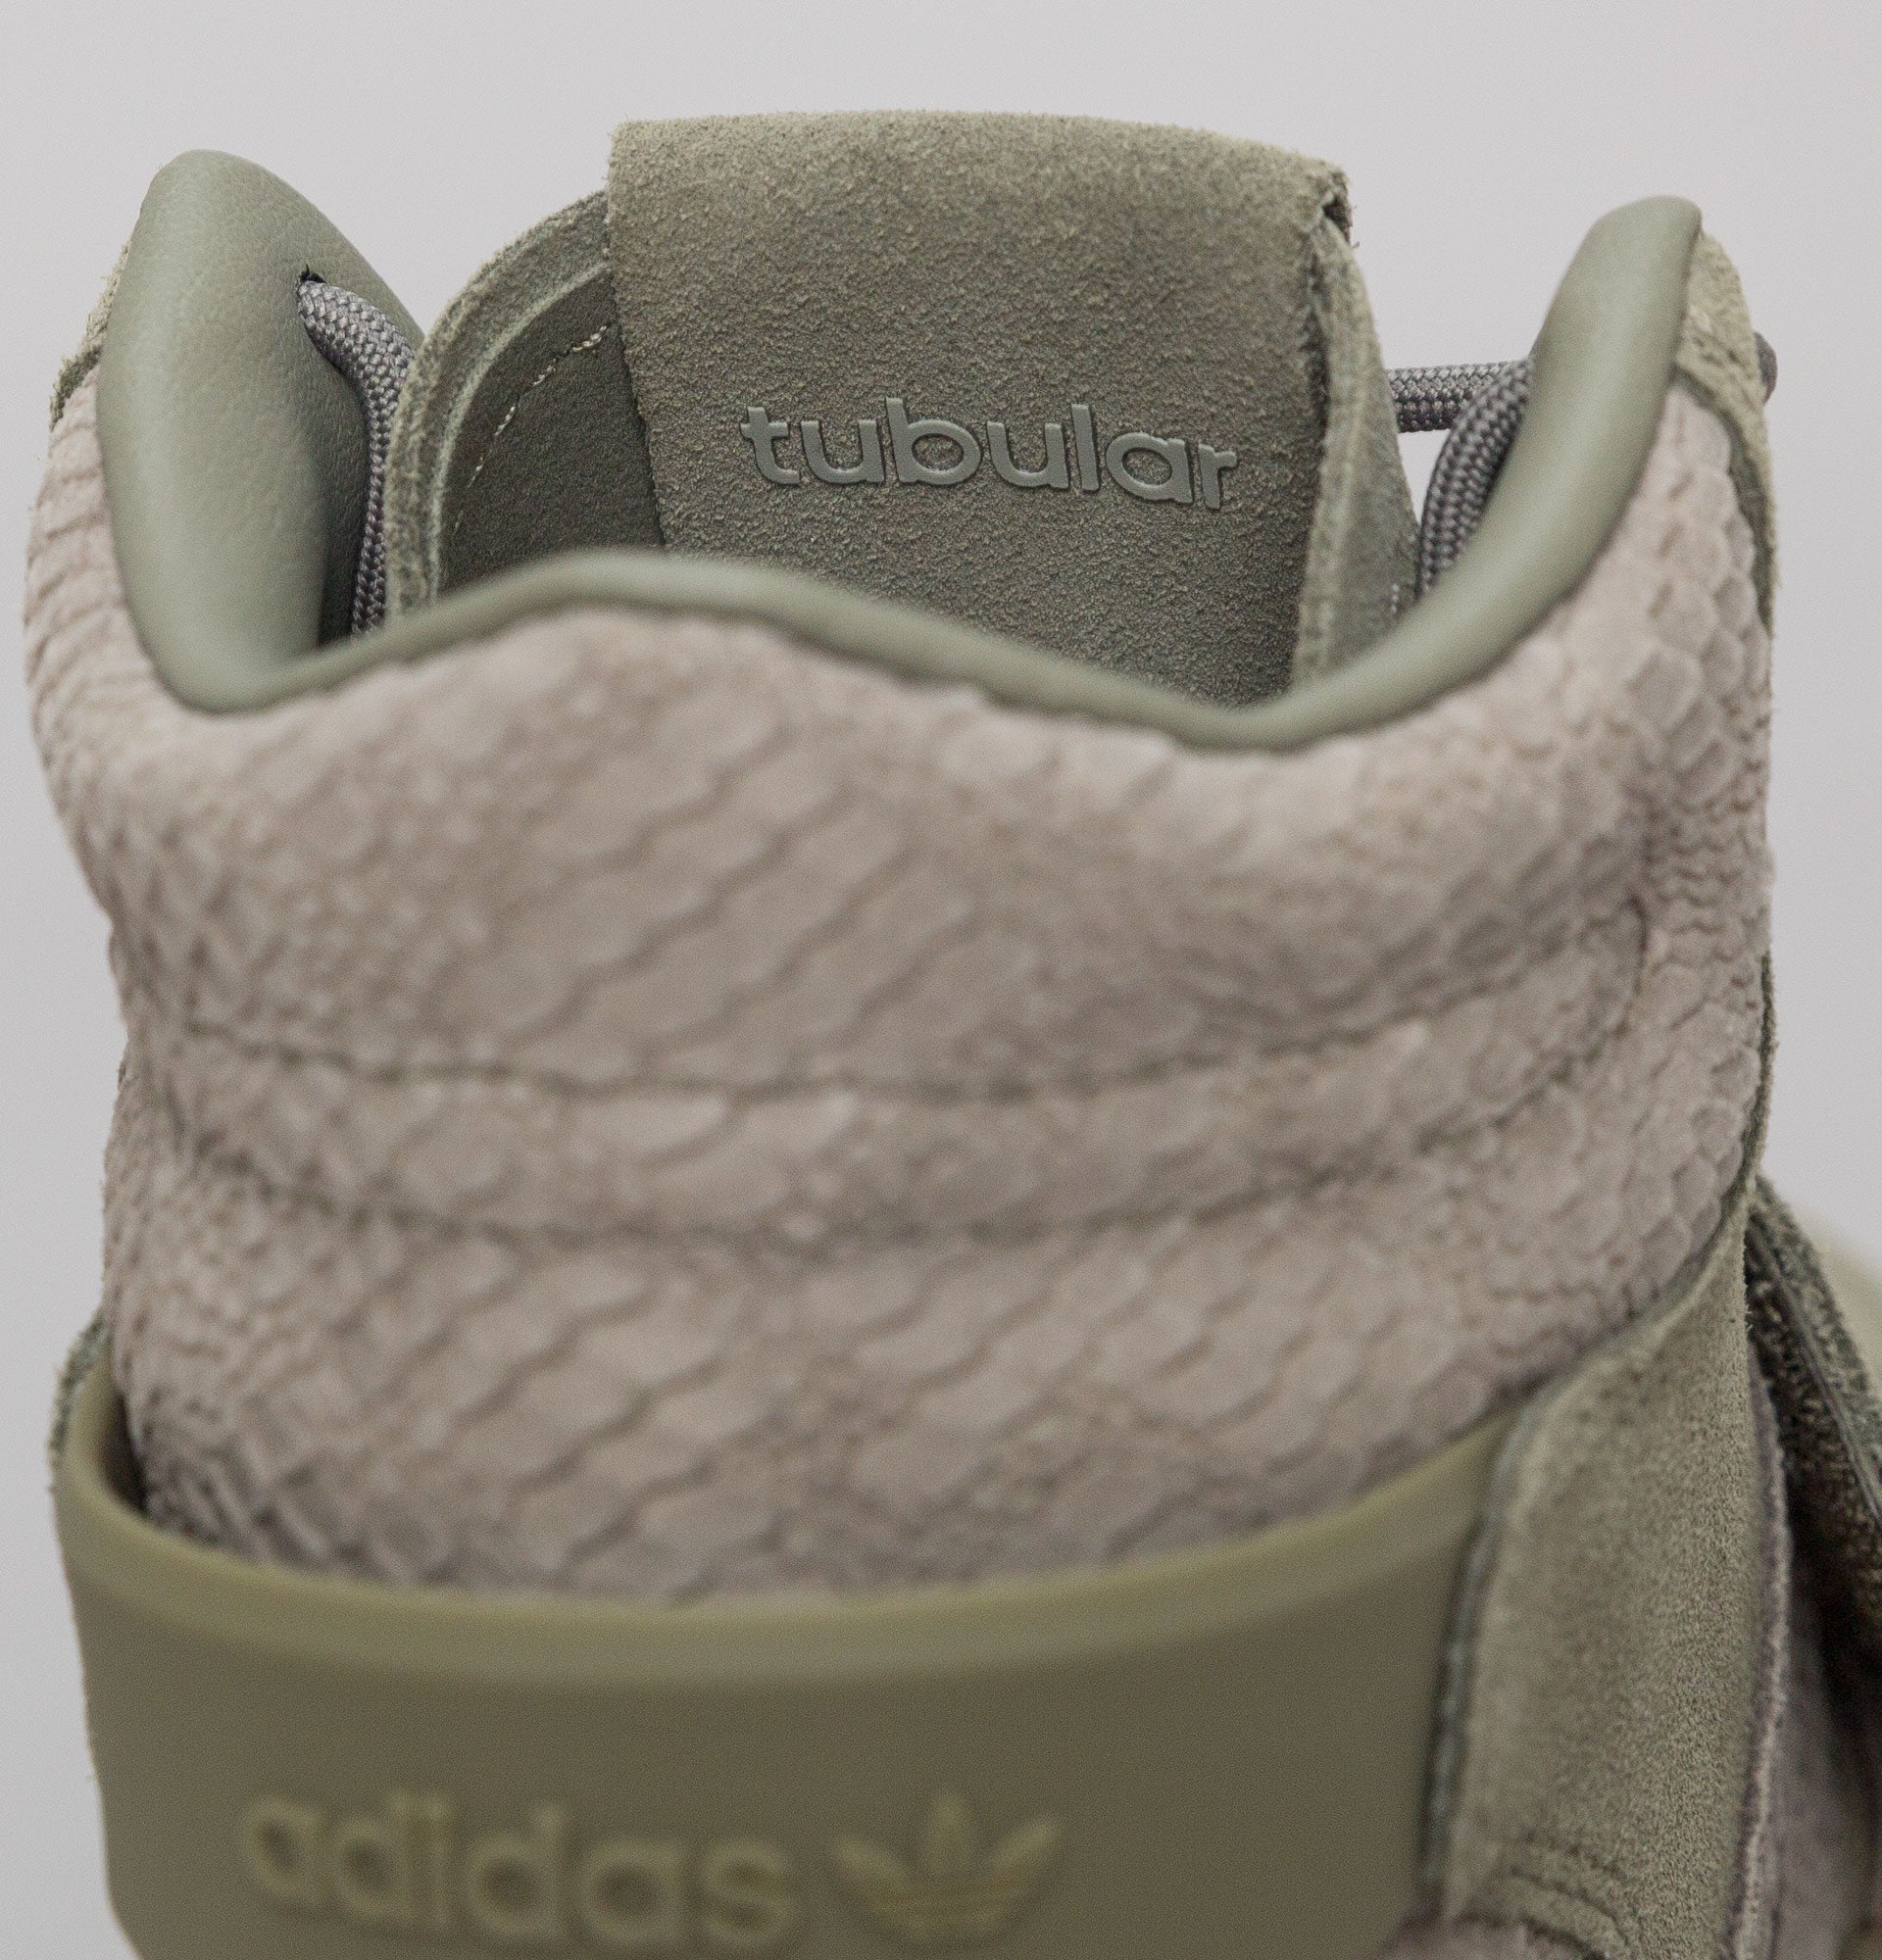 adidas originals tubular invader strap on feet